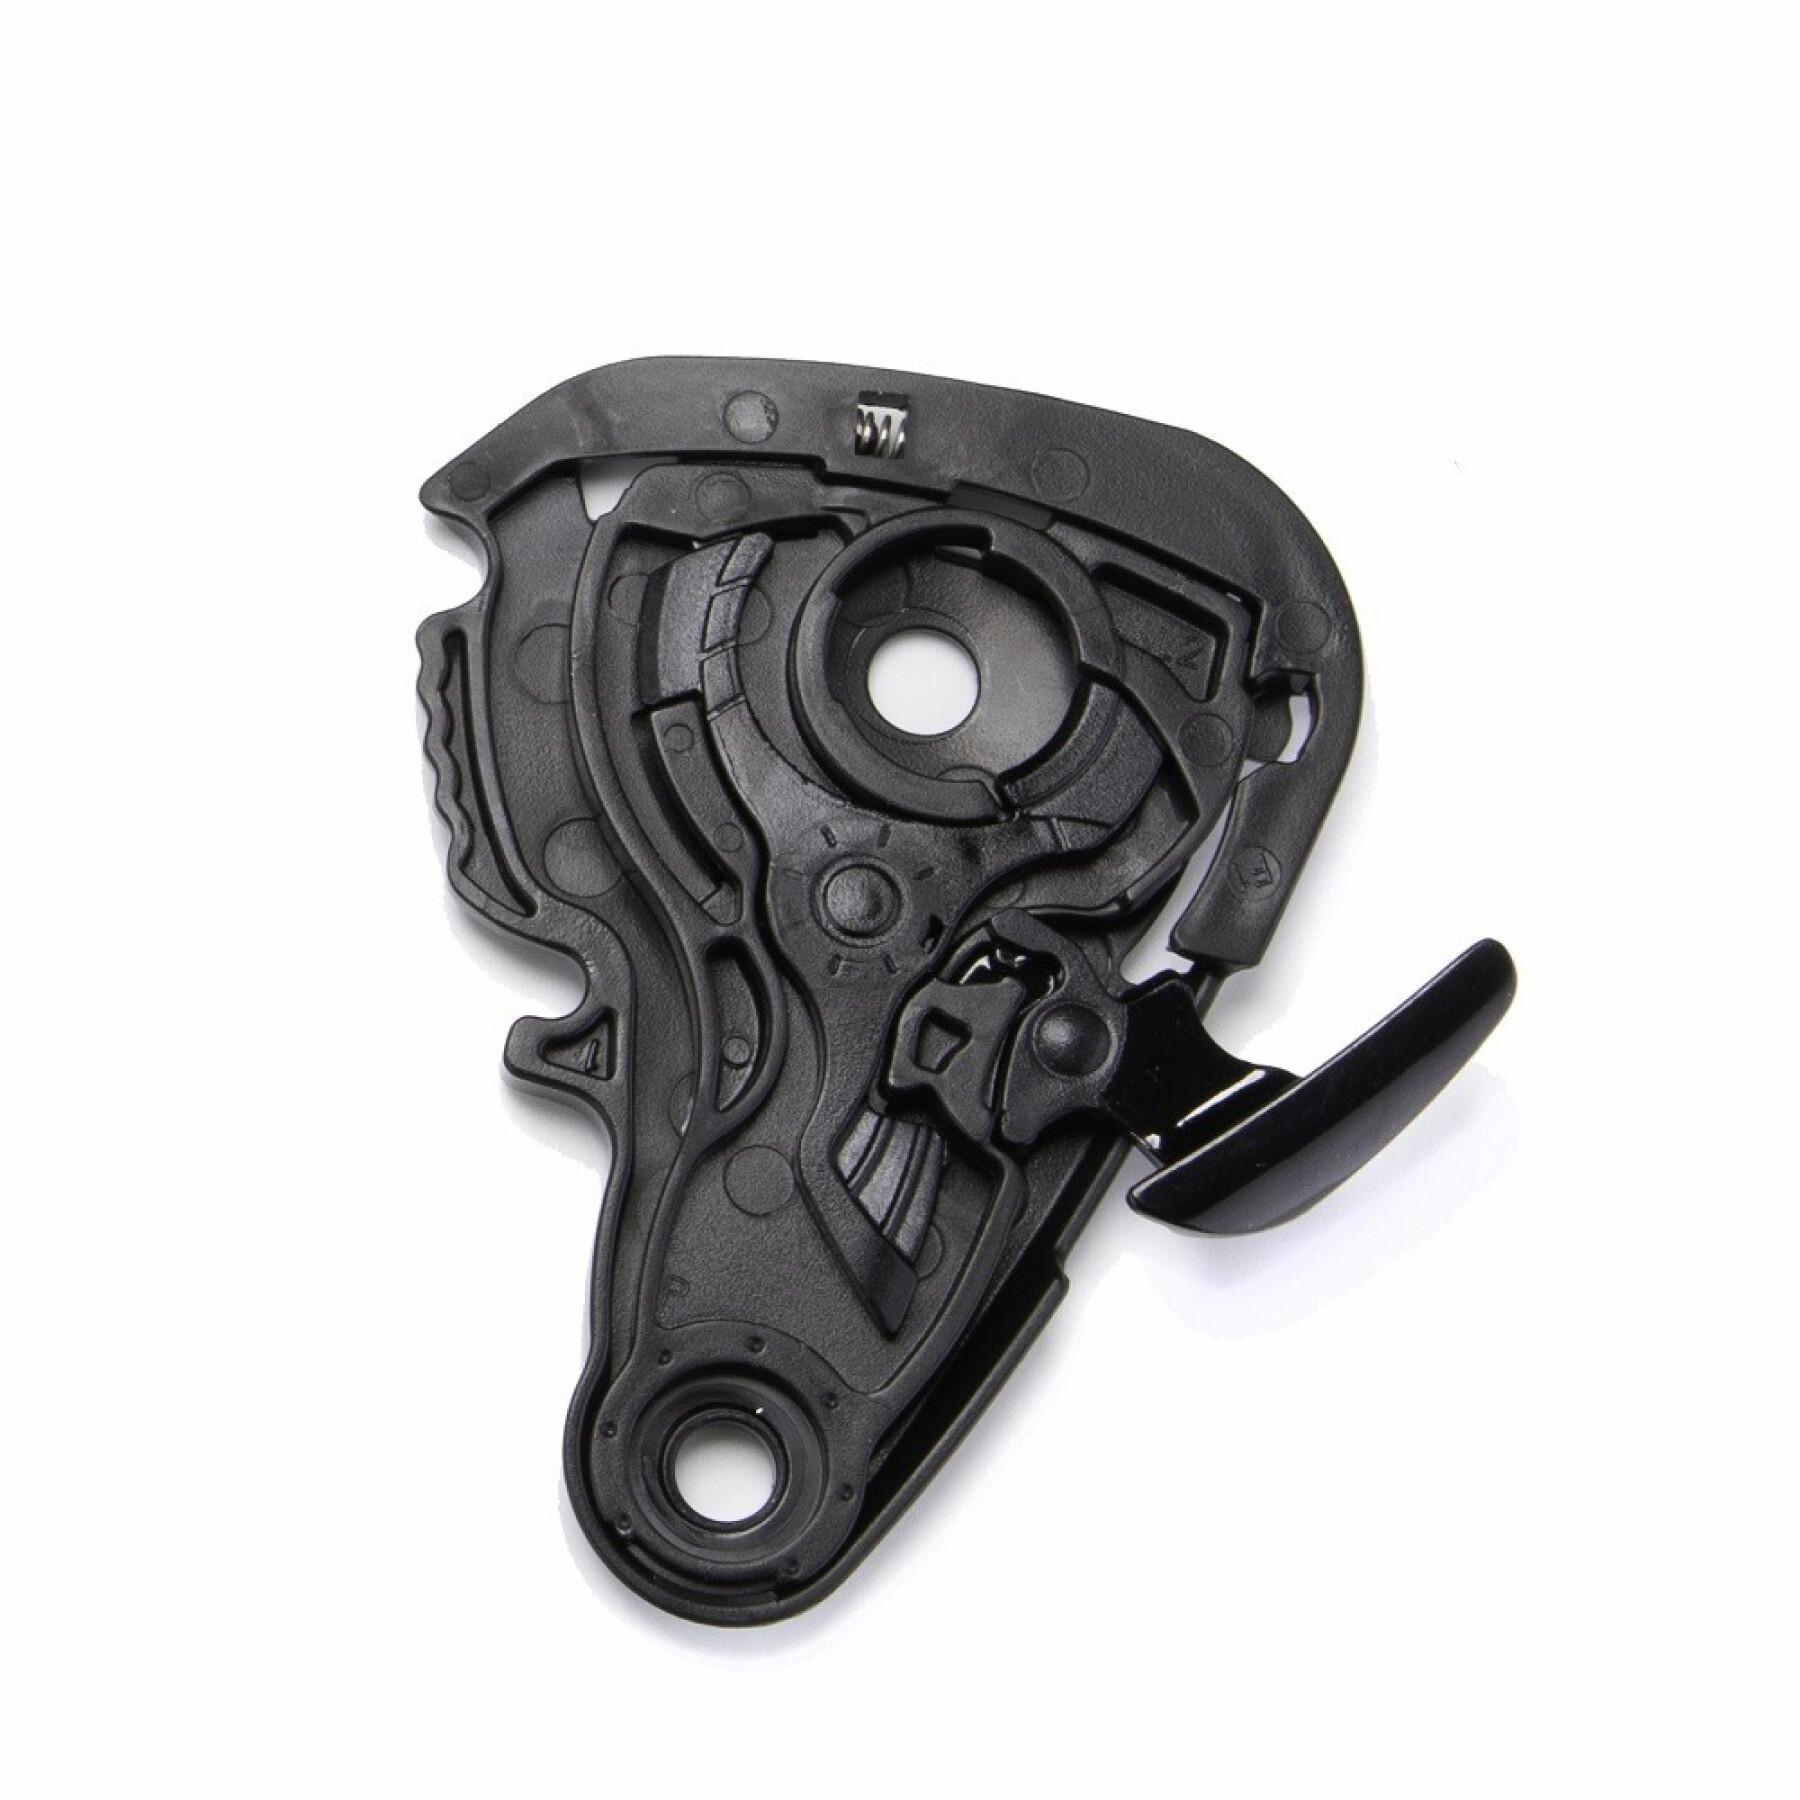 Kit de montaje para visera de moto Scorpion Exo-S1 Shield